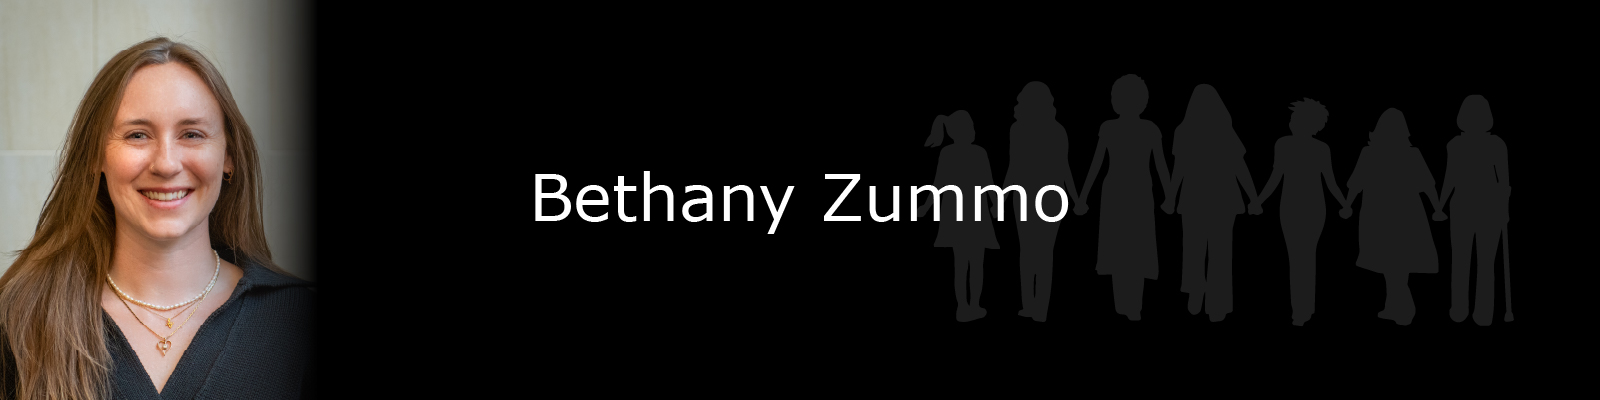 Photo of Bethany Zummo.